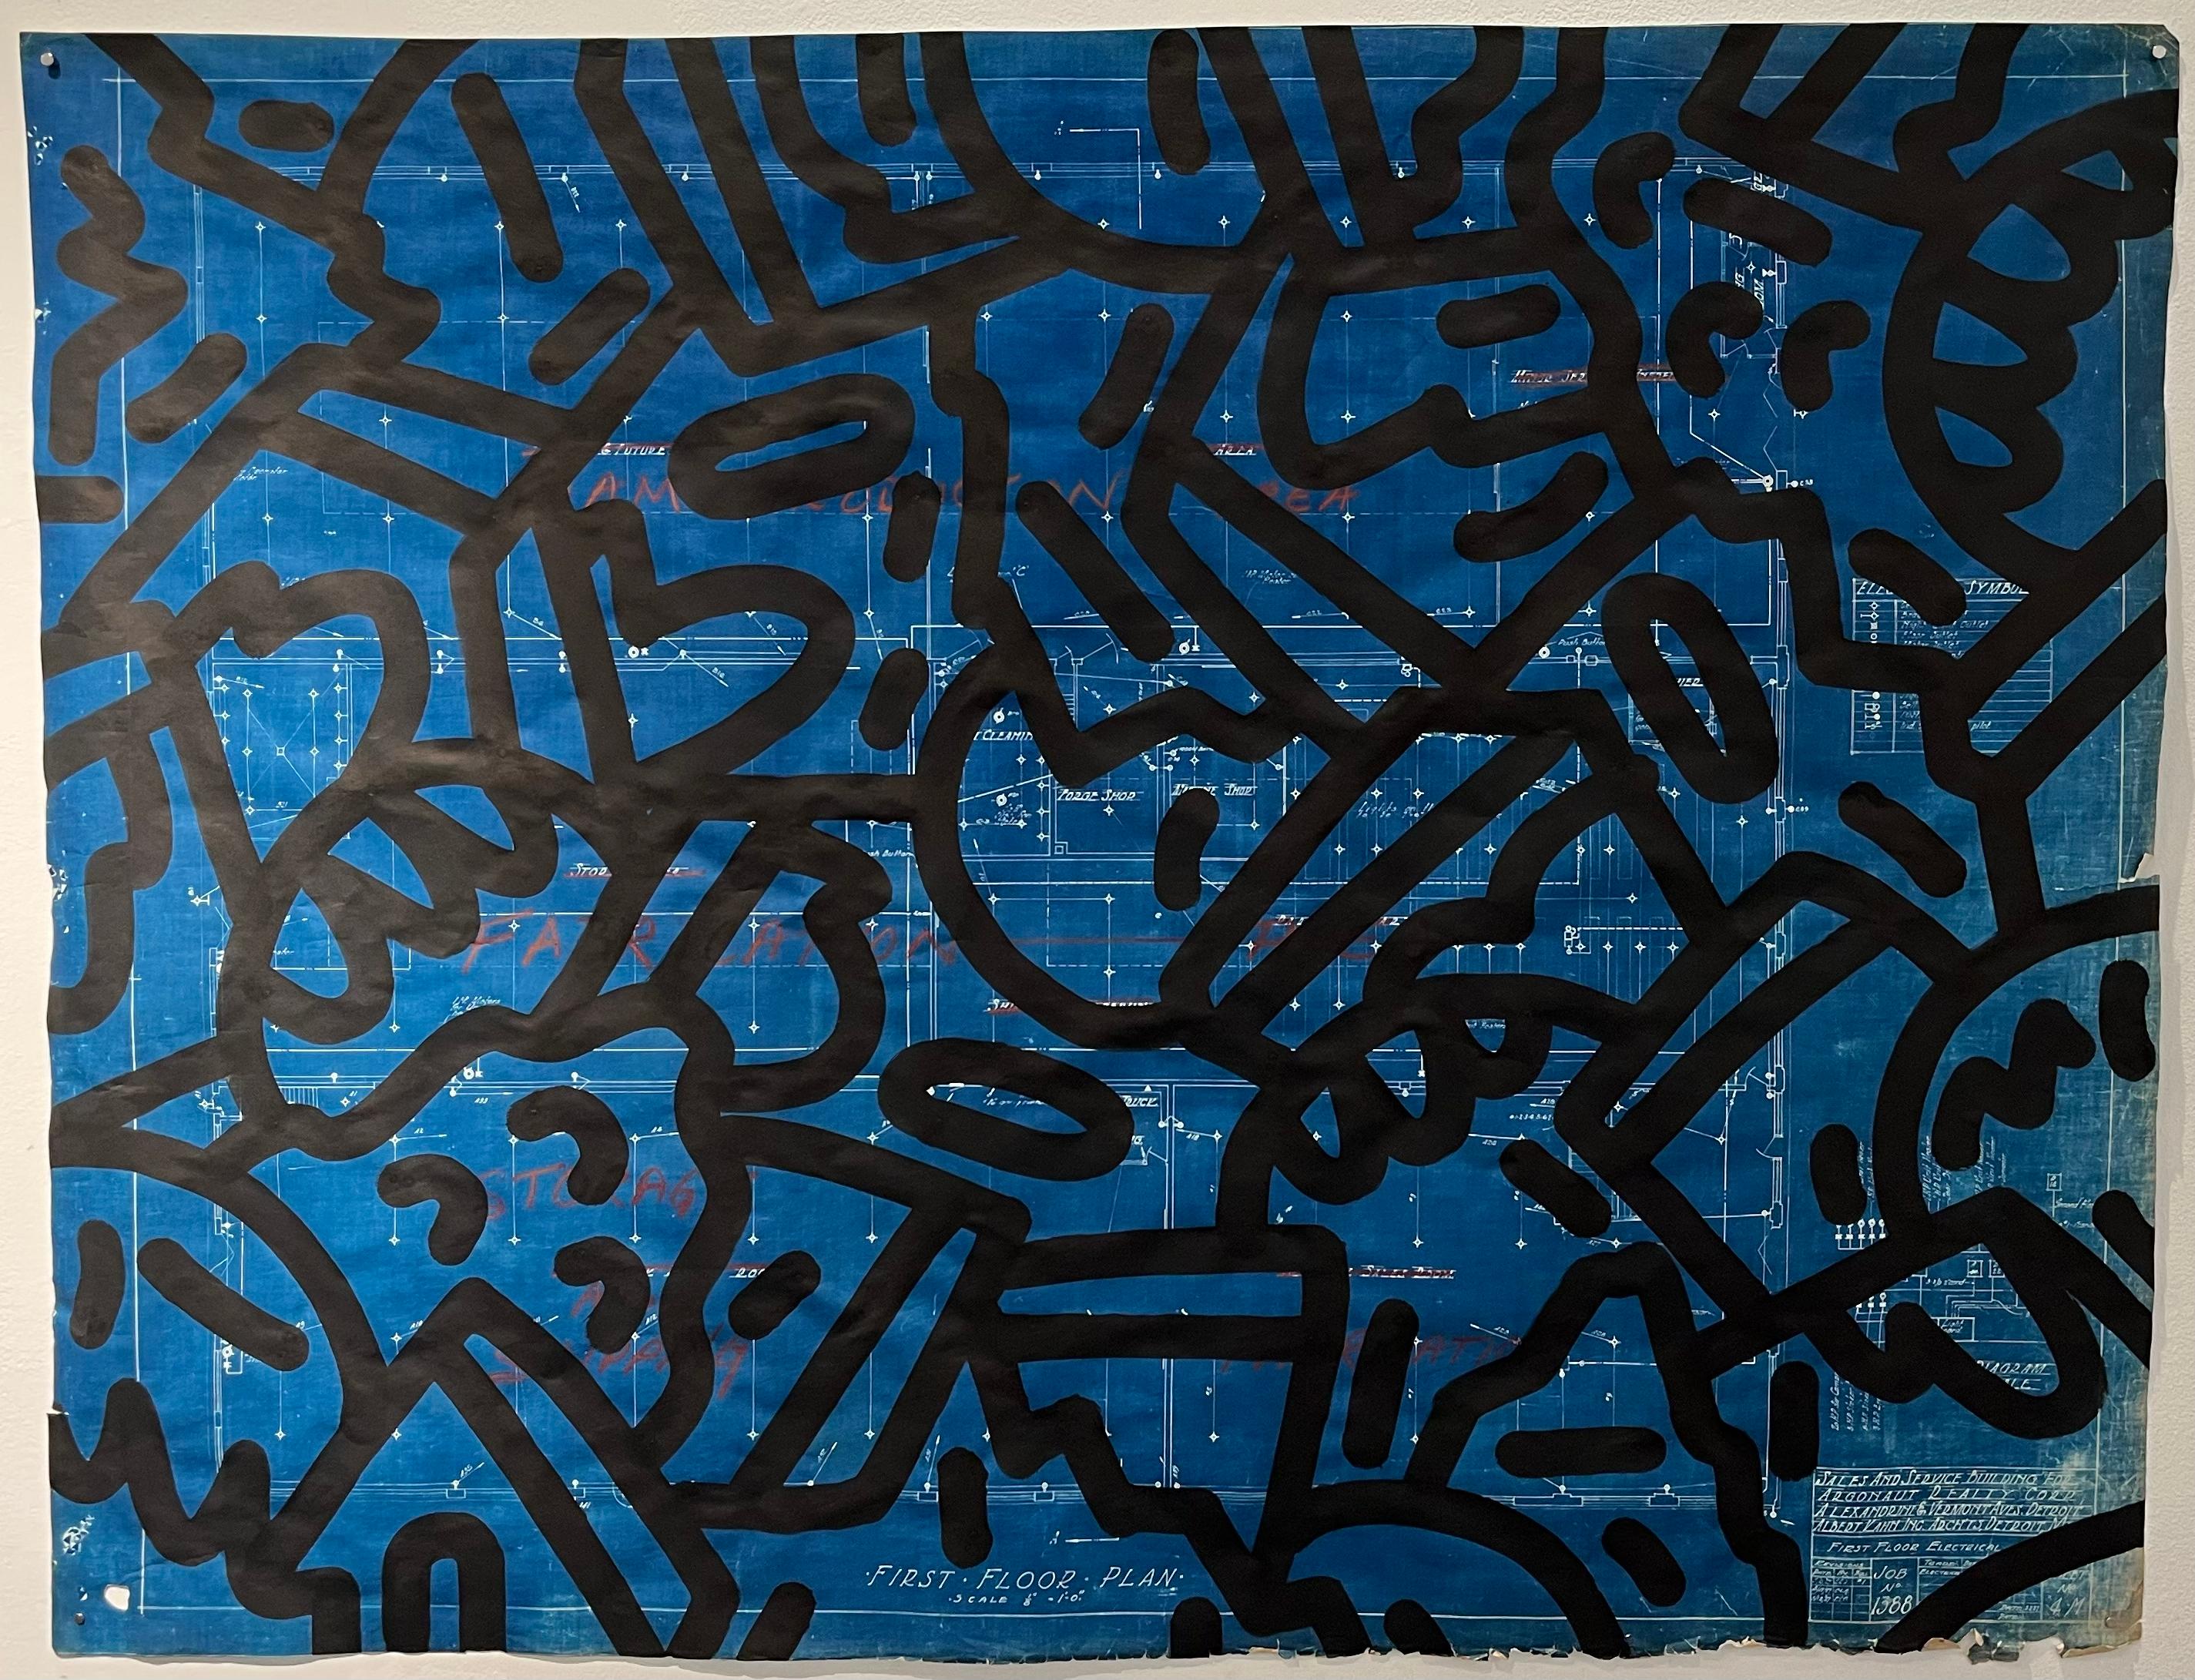 Mike Han Abstract Drawing – Moderner Vandalismus der Moderne: Albert Kahn, Blatt 4M